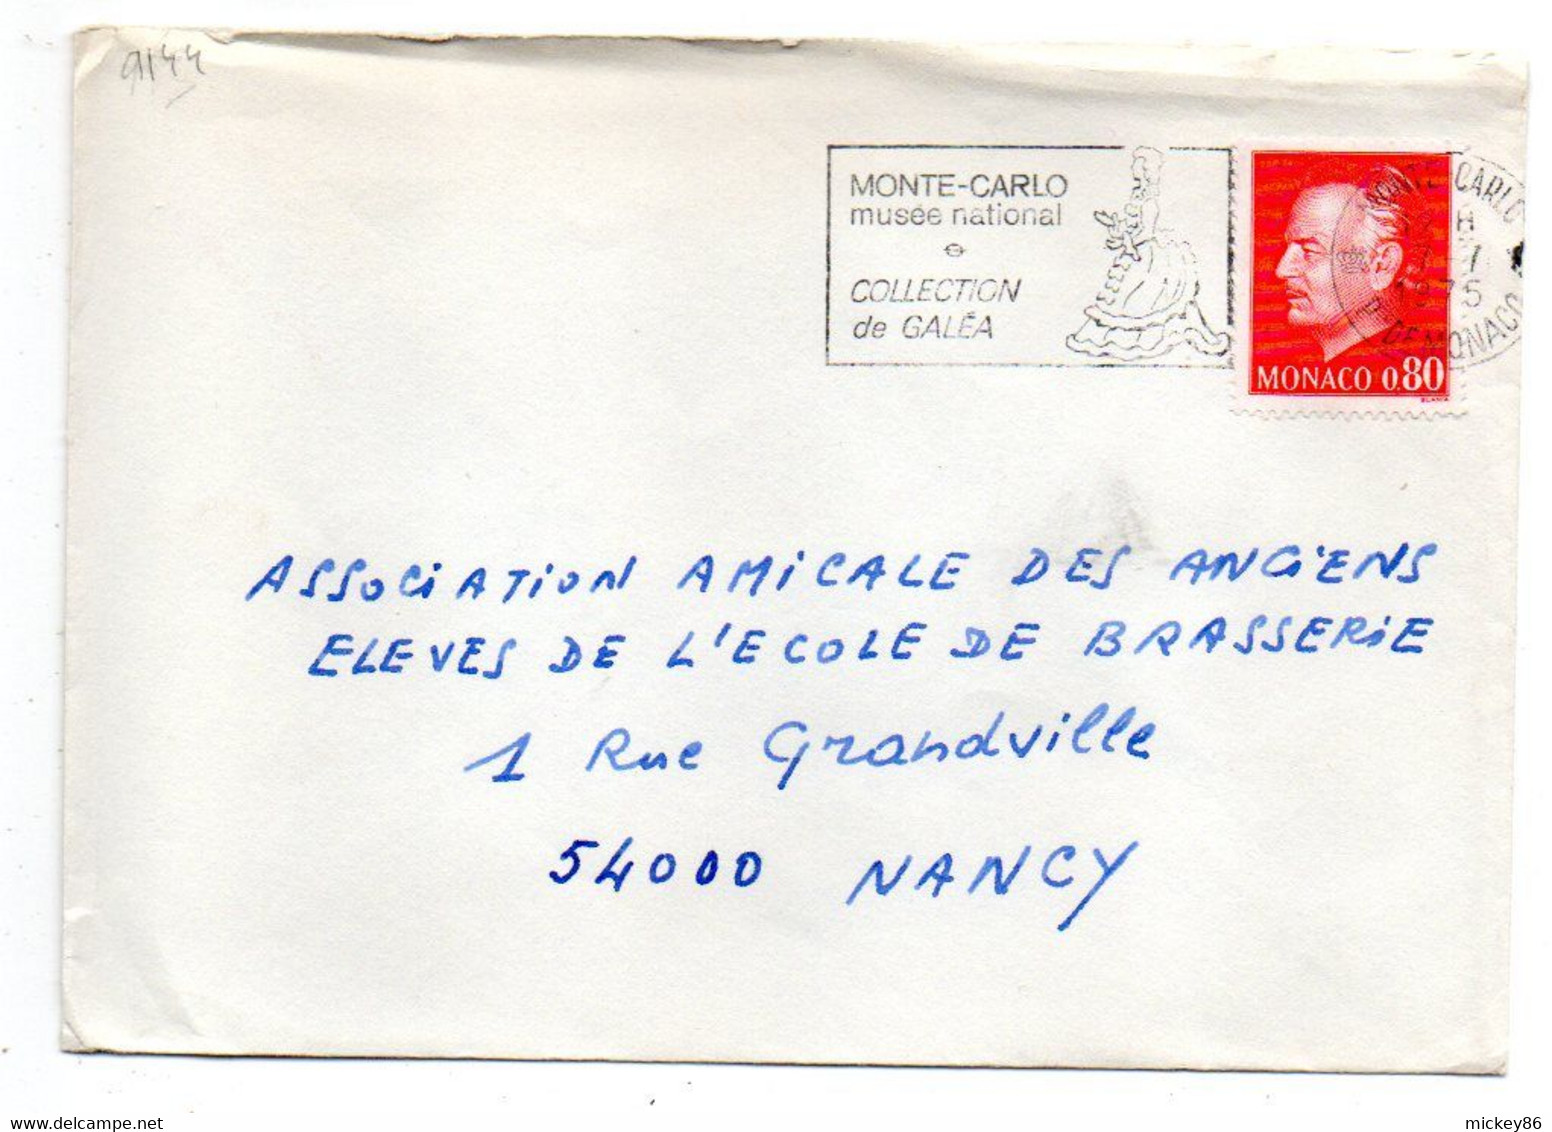 Monaco -1975- Lettre De Monte-Carlo Pour NANCY (France)....tp...cachet  Musée National Et Collec Galéa - Briefe U. Dokumente